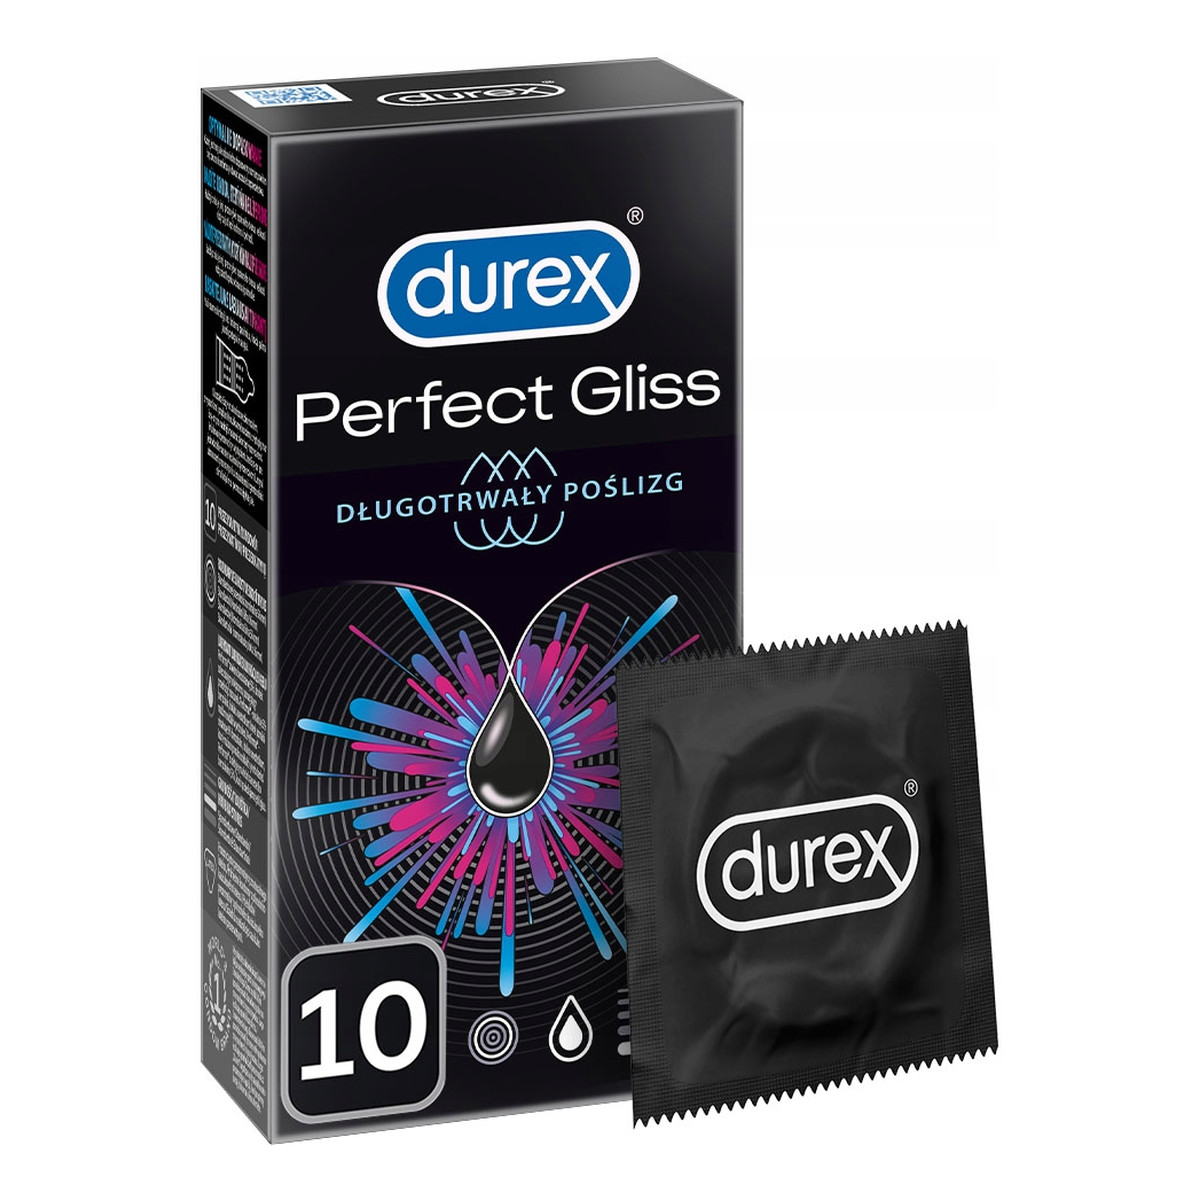 Durex Perfect gliss długotrwały poślizg prezerwatywy 10 szt